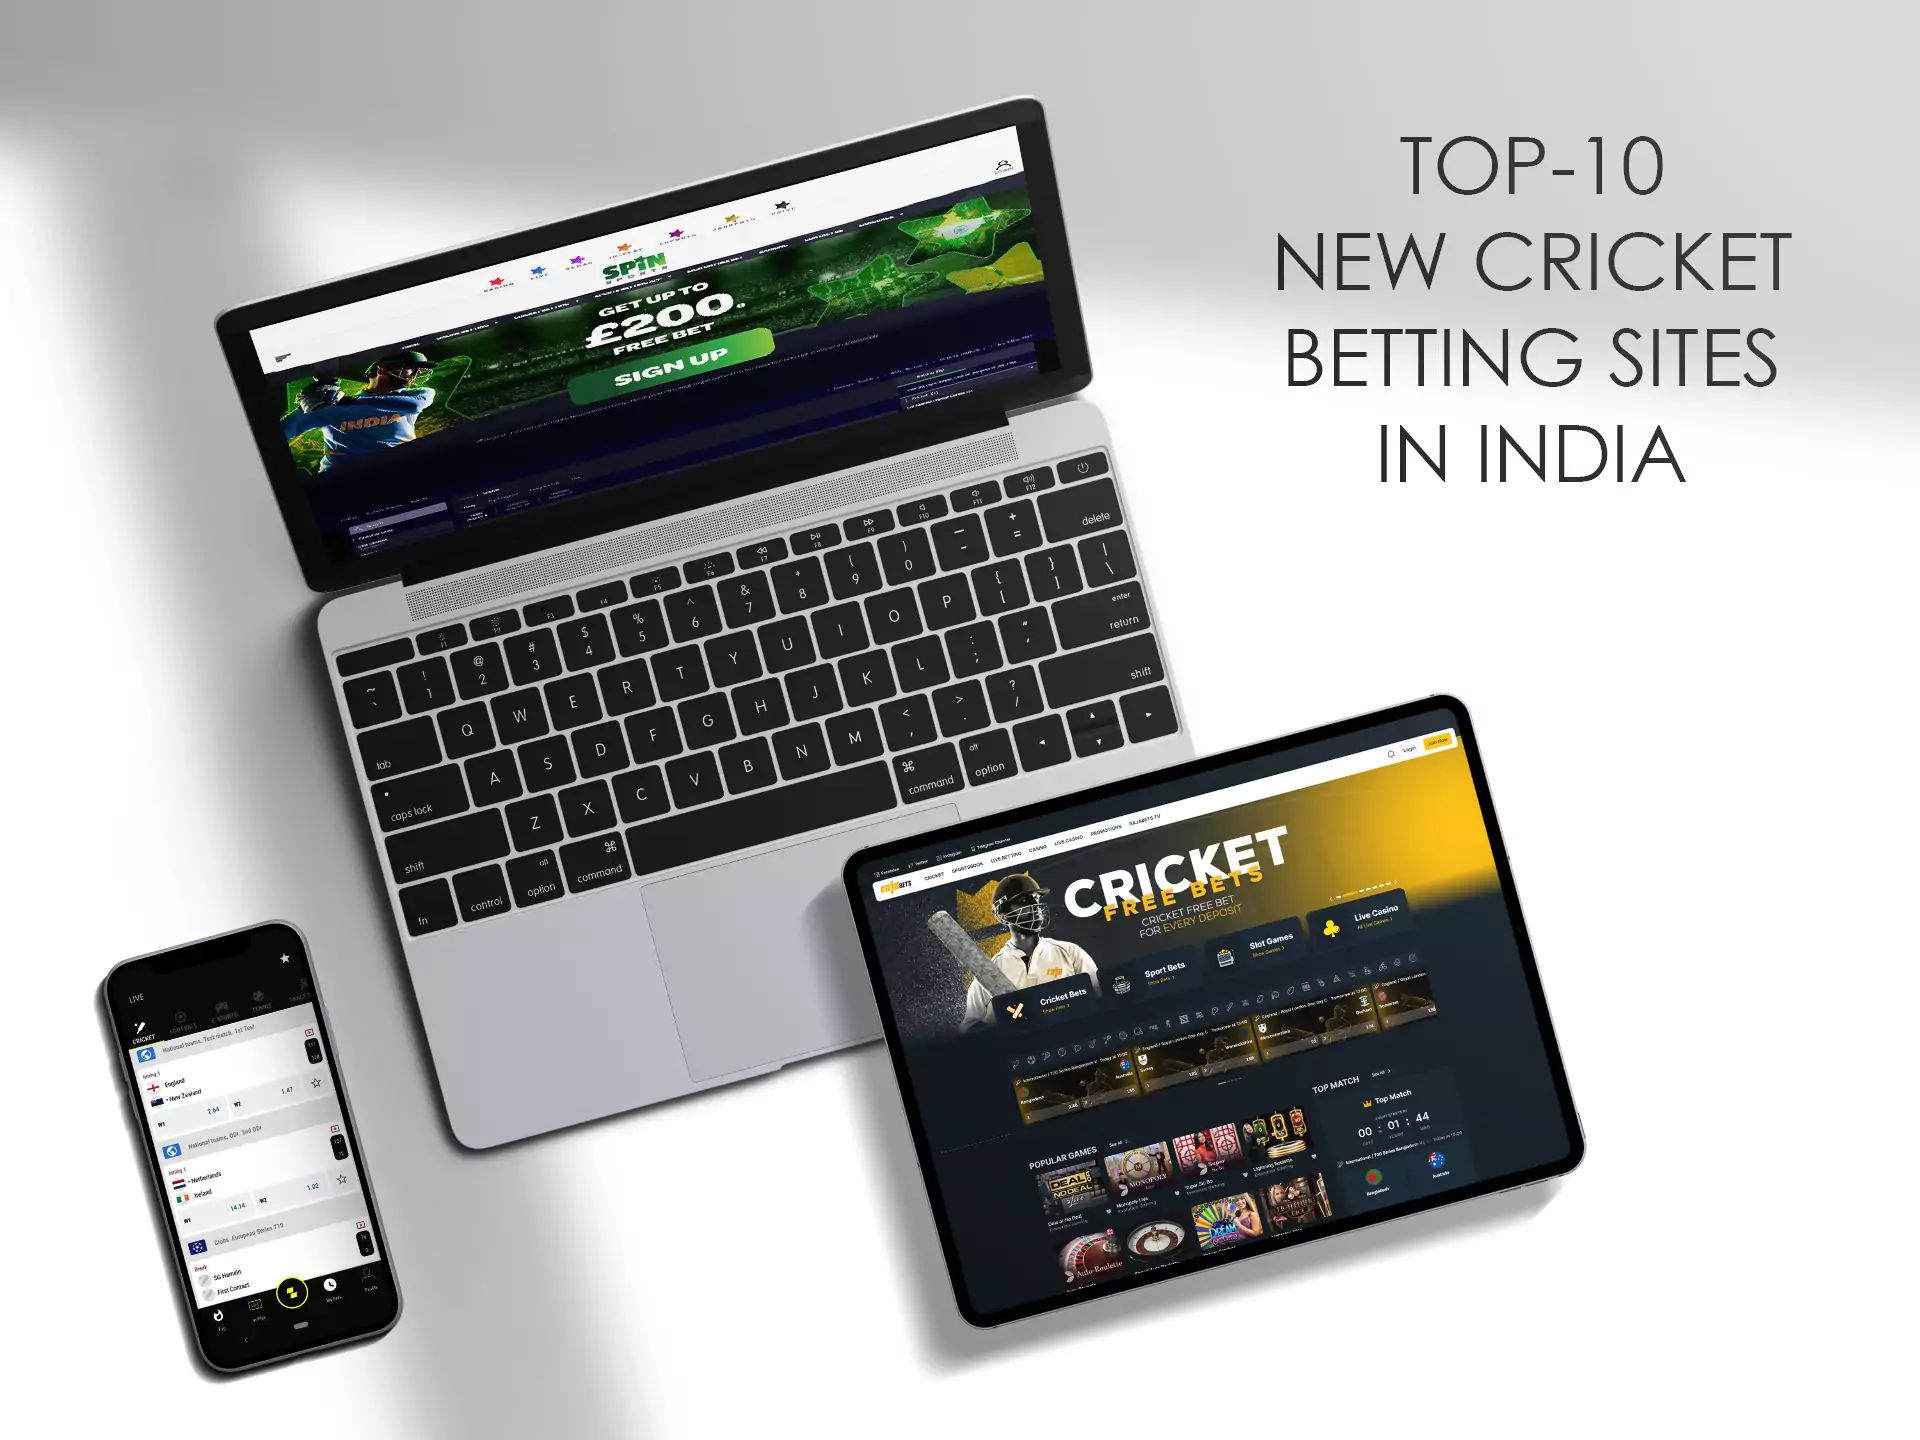 नई क्रिकेट सट्टेबाजी साइटों को हमेशा हमारे विशेषज्ञों द्वारा जांचा जाता है।